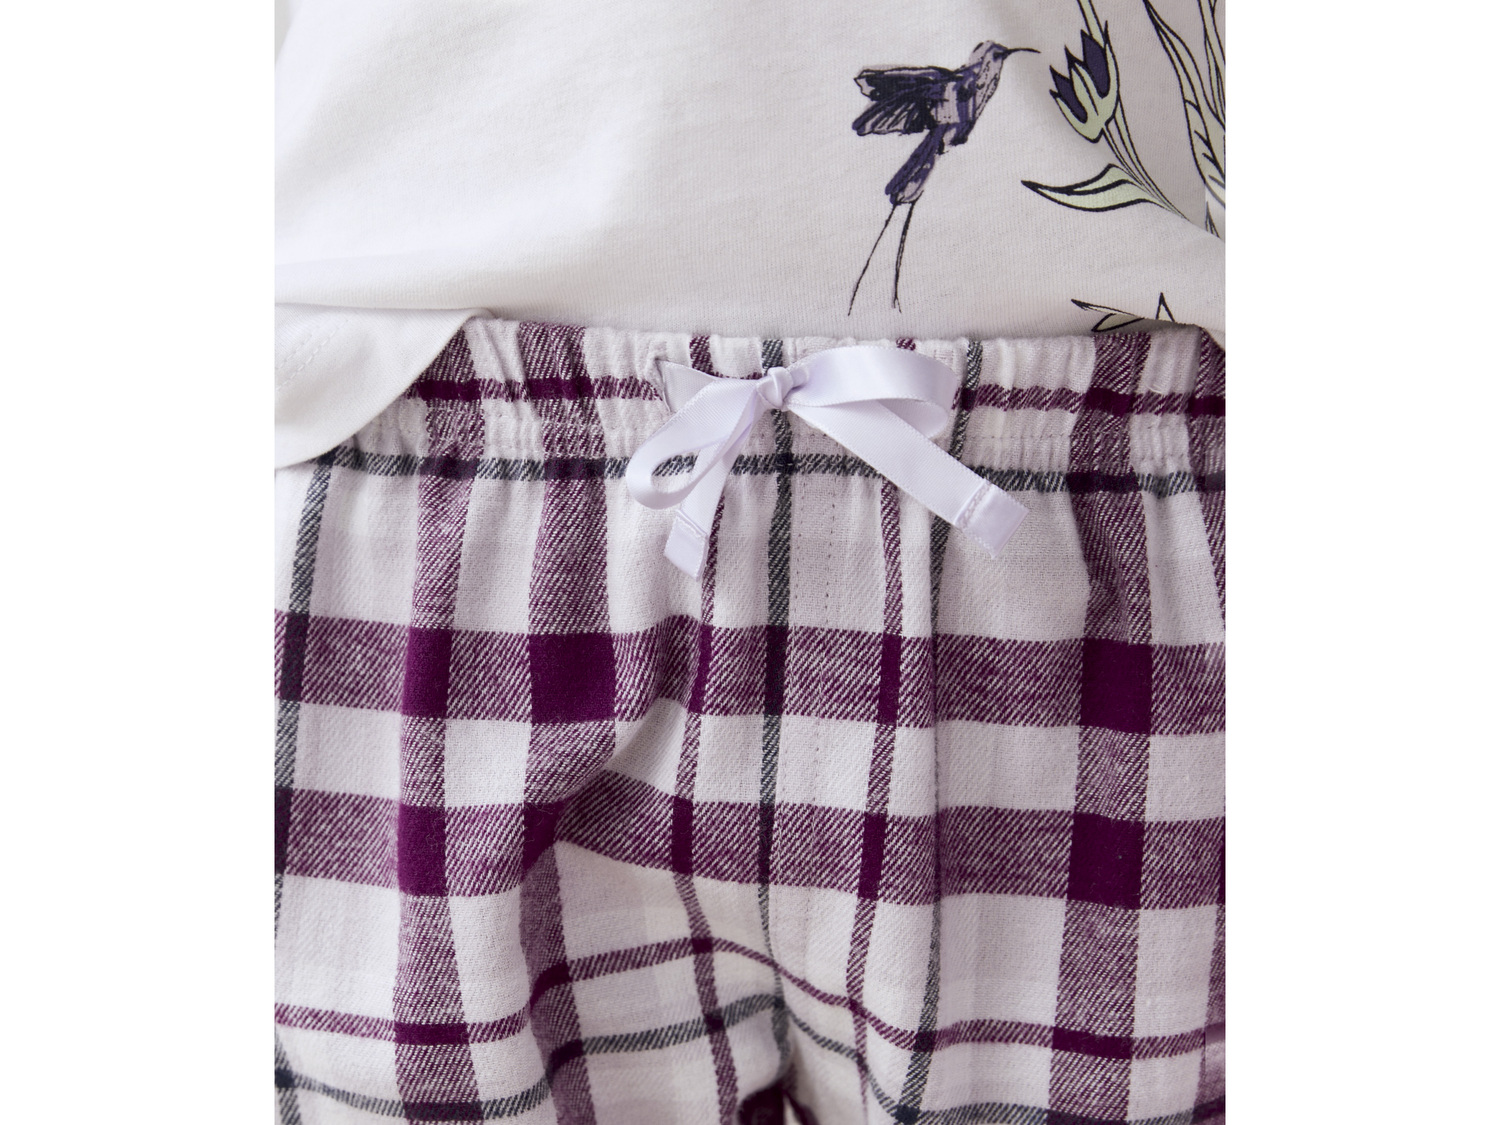 Piżama dziecięca Lupilu, cena 19,99 PLN 
- rozmiary: 86-116
- spodnie z ciepłej ...